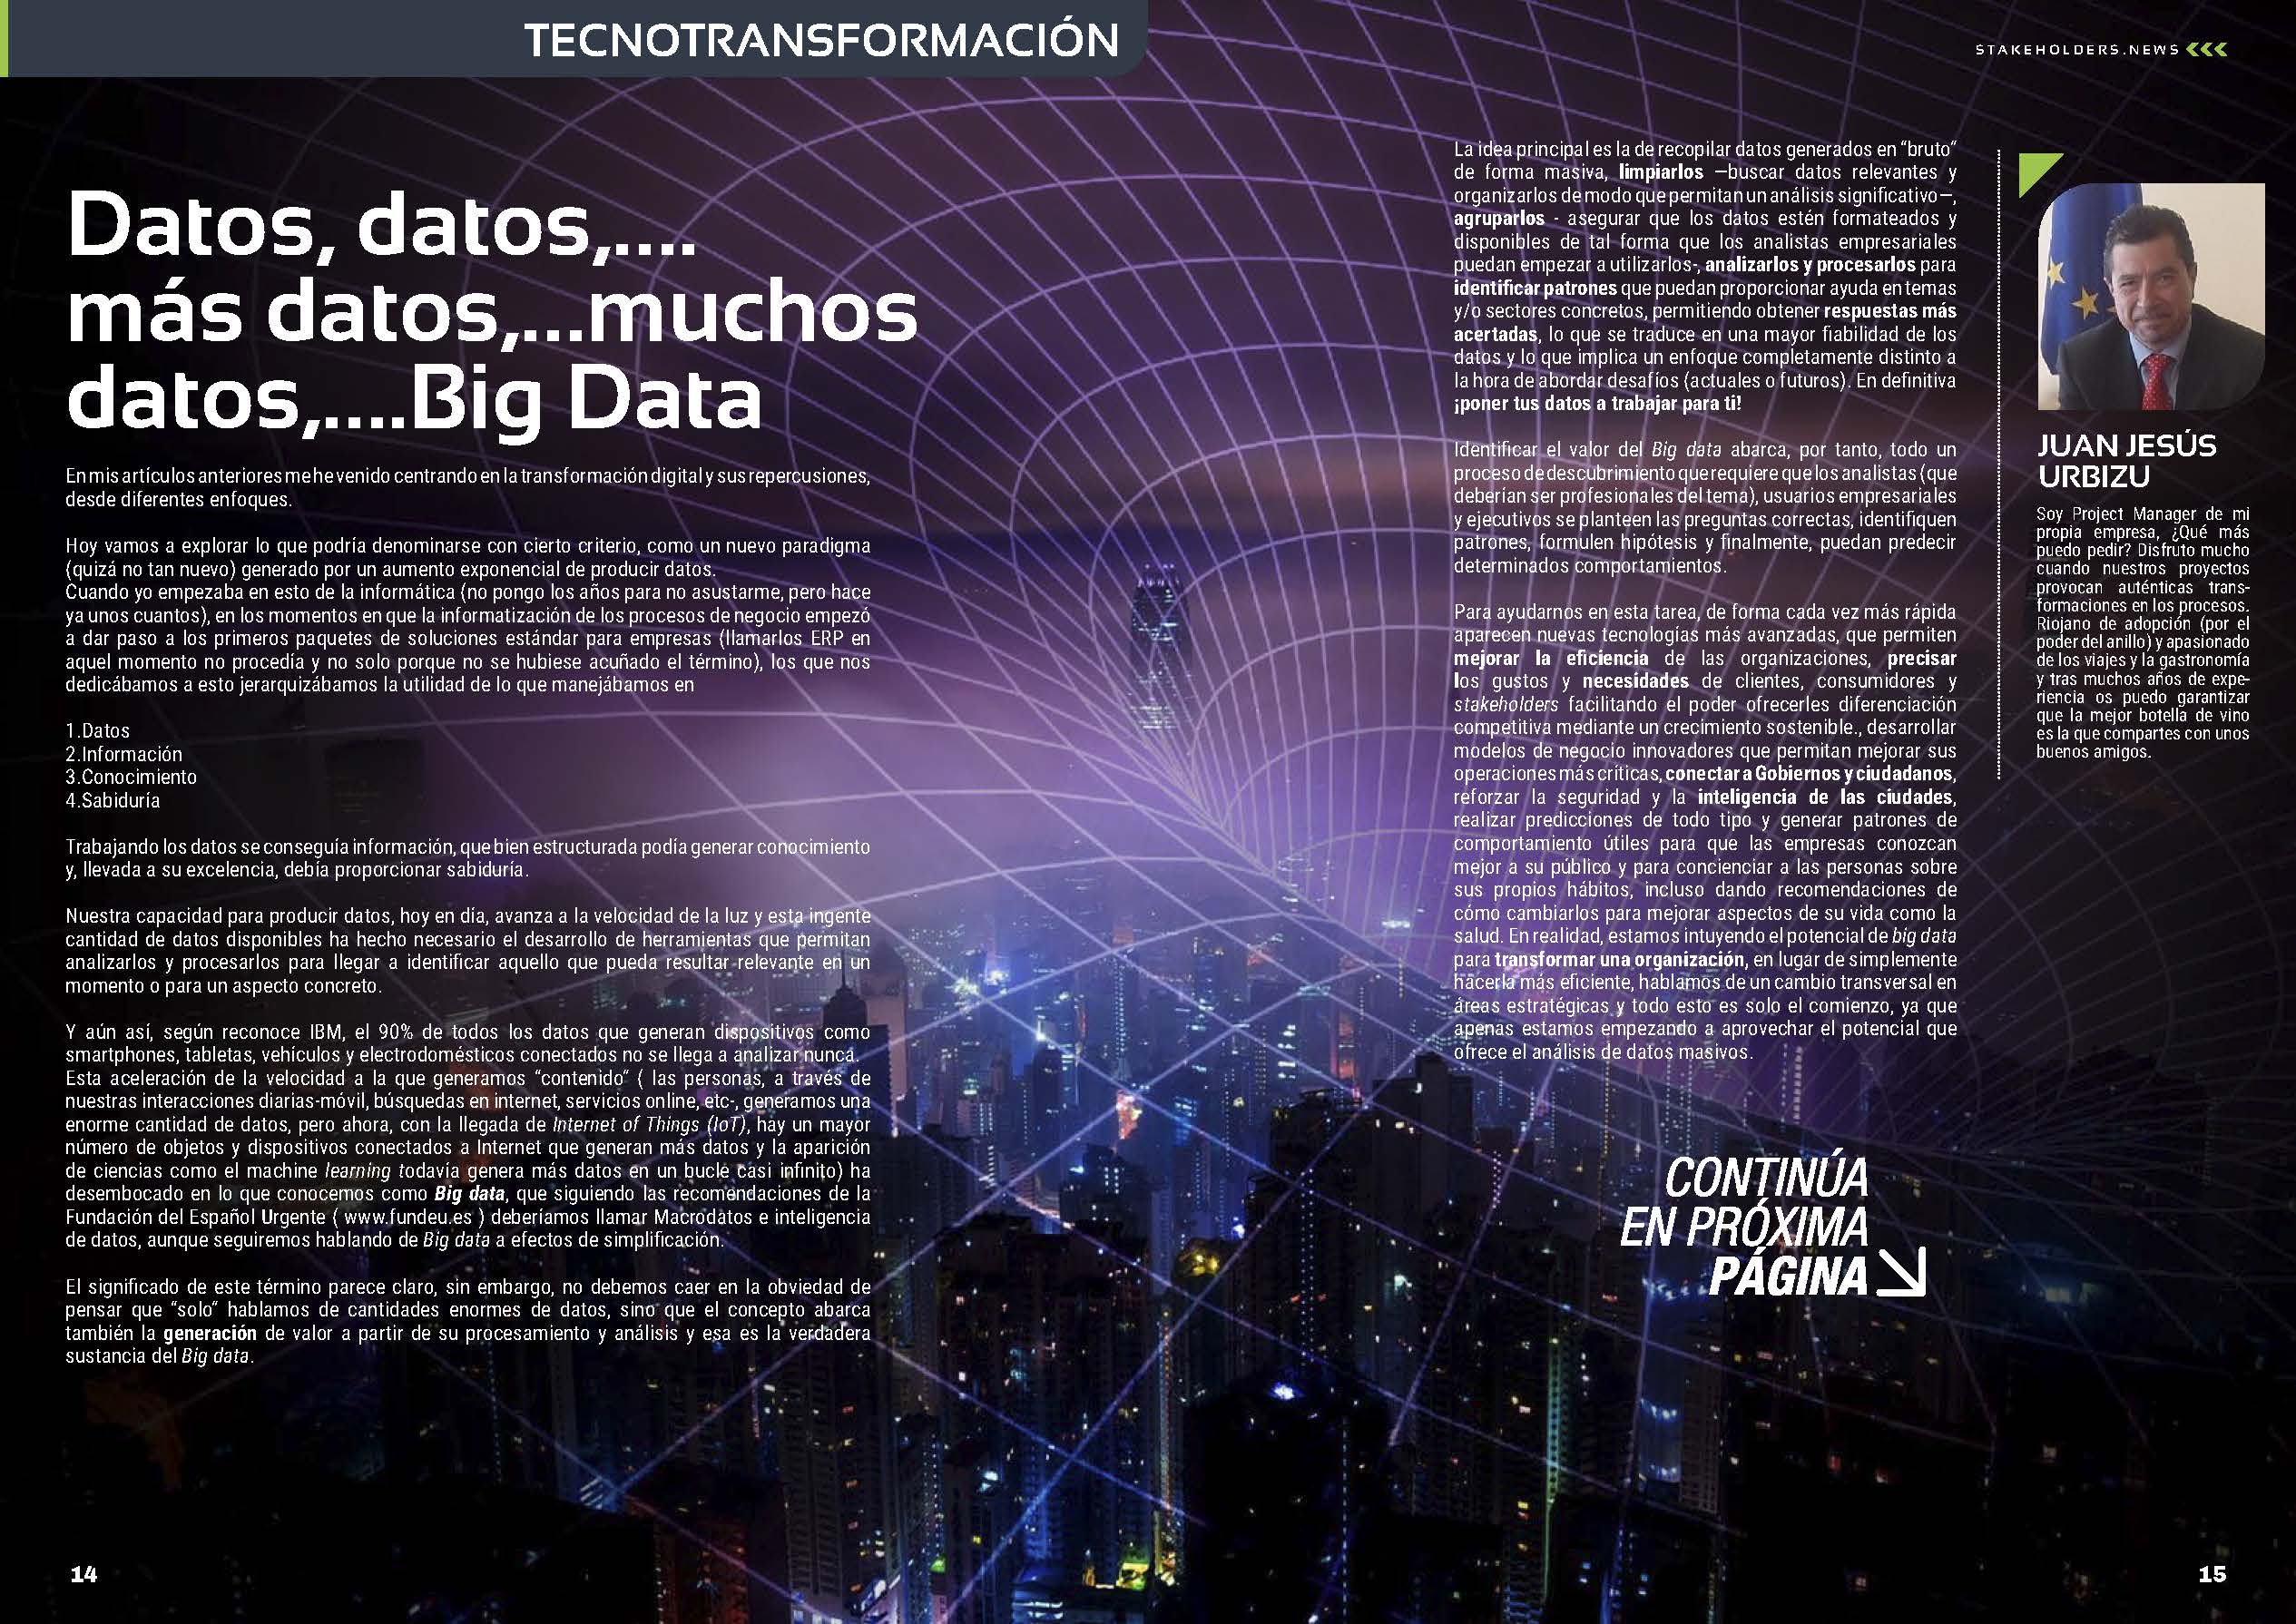 Artículo "Datos, datos,….más datos,…muchos datos,….Big Data" de Juan Jesús Urbizu en la Sección "TecnoTransformación" de la Revista Stakeholders.news